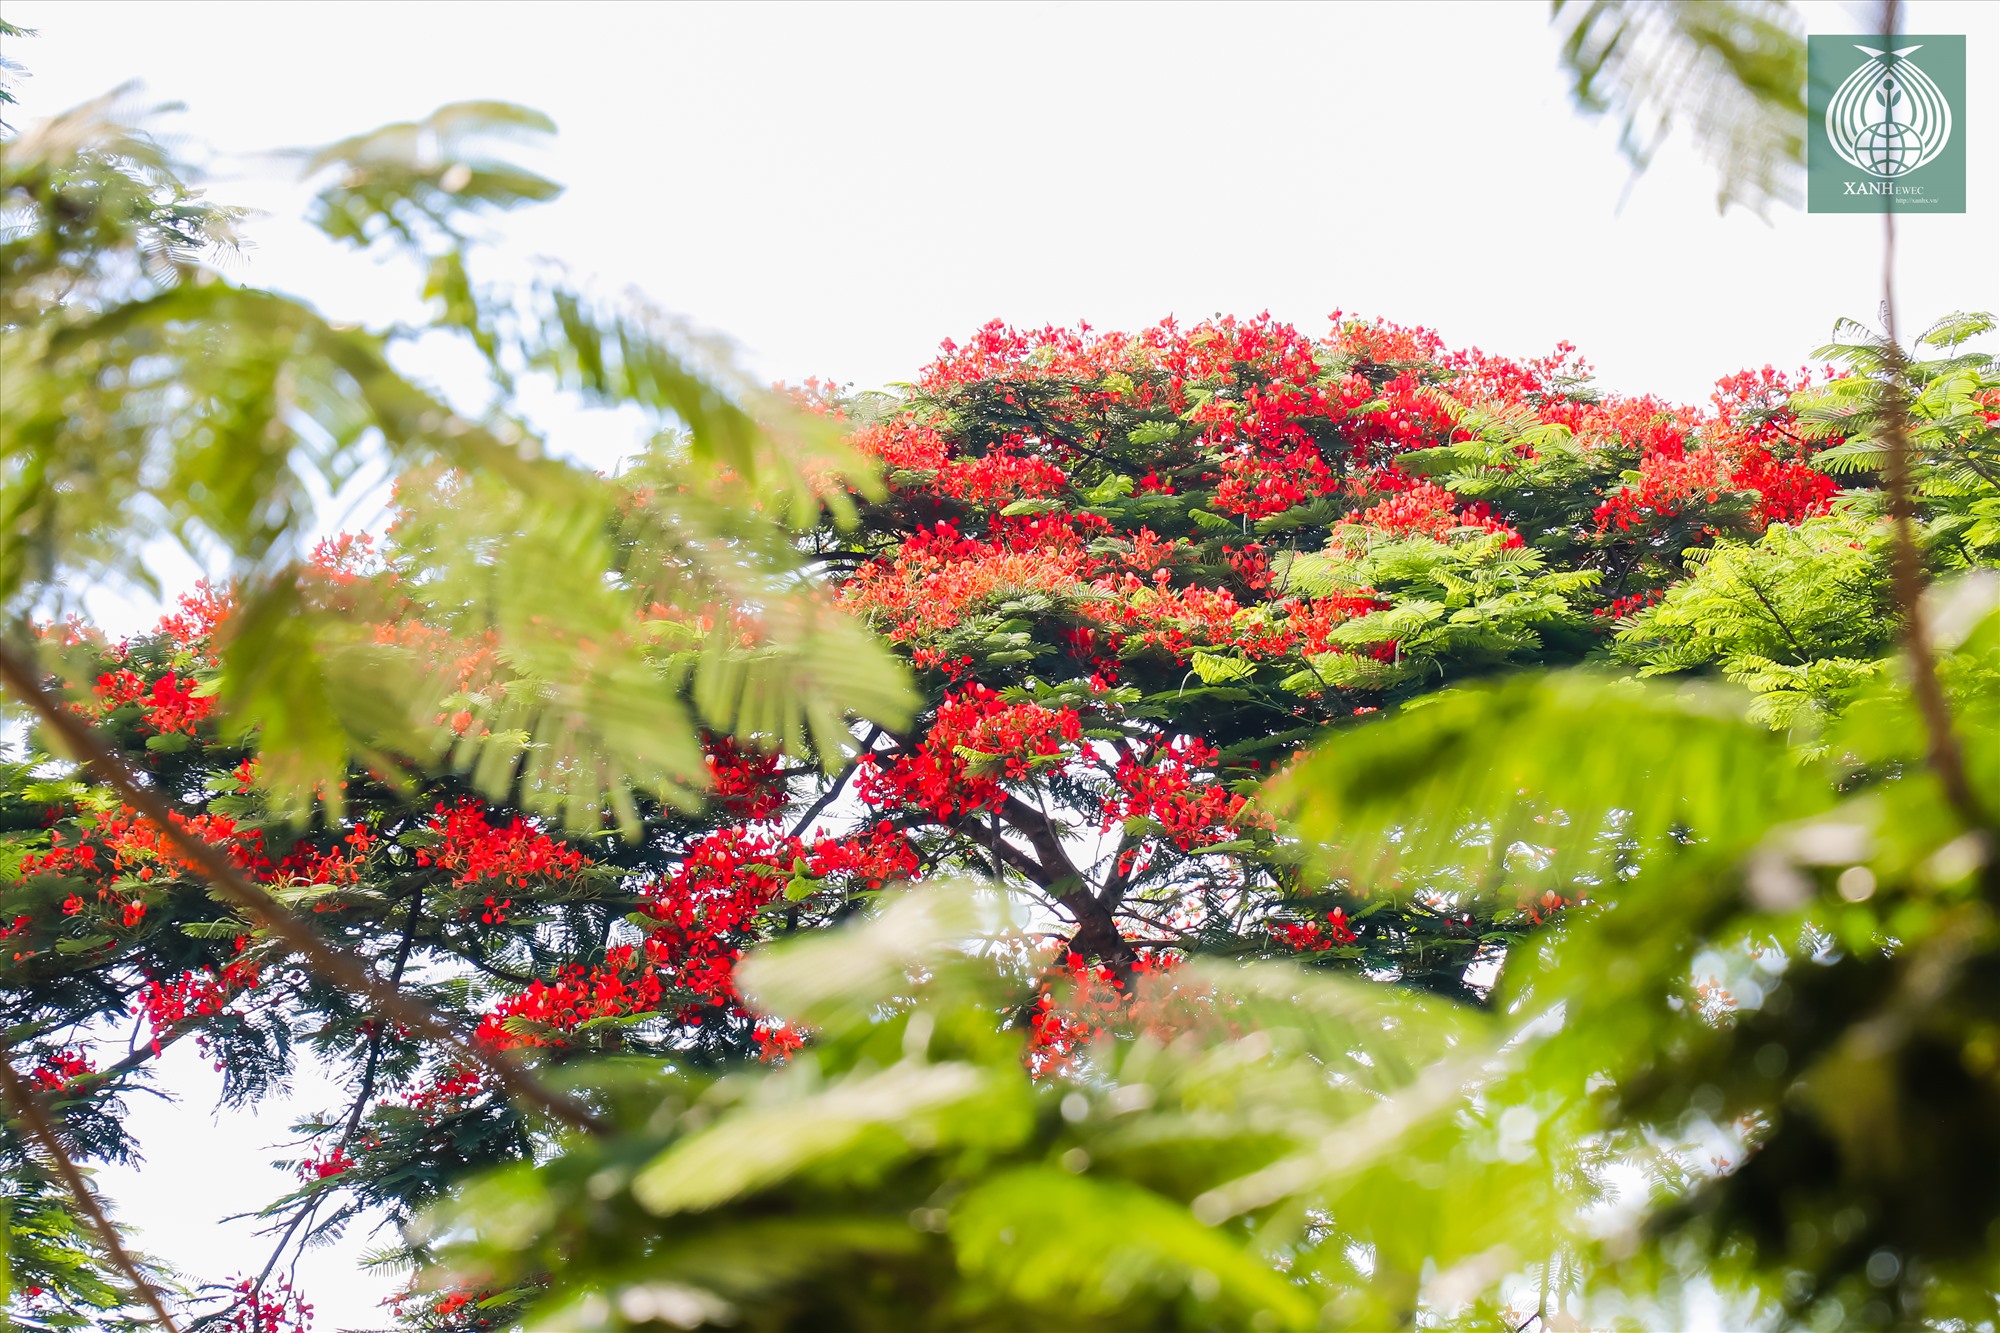 Đây là loài hoa đặc trưng của mùa hạ, những ngày này, hoa phượng đang nở đỏ rực cả bầu trời.